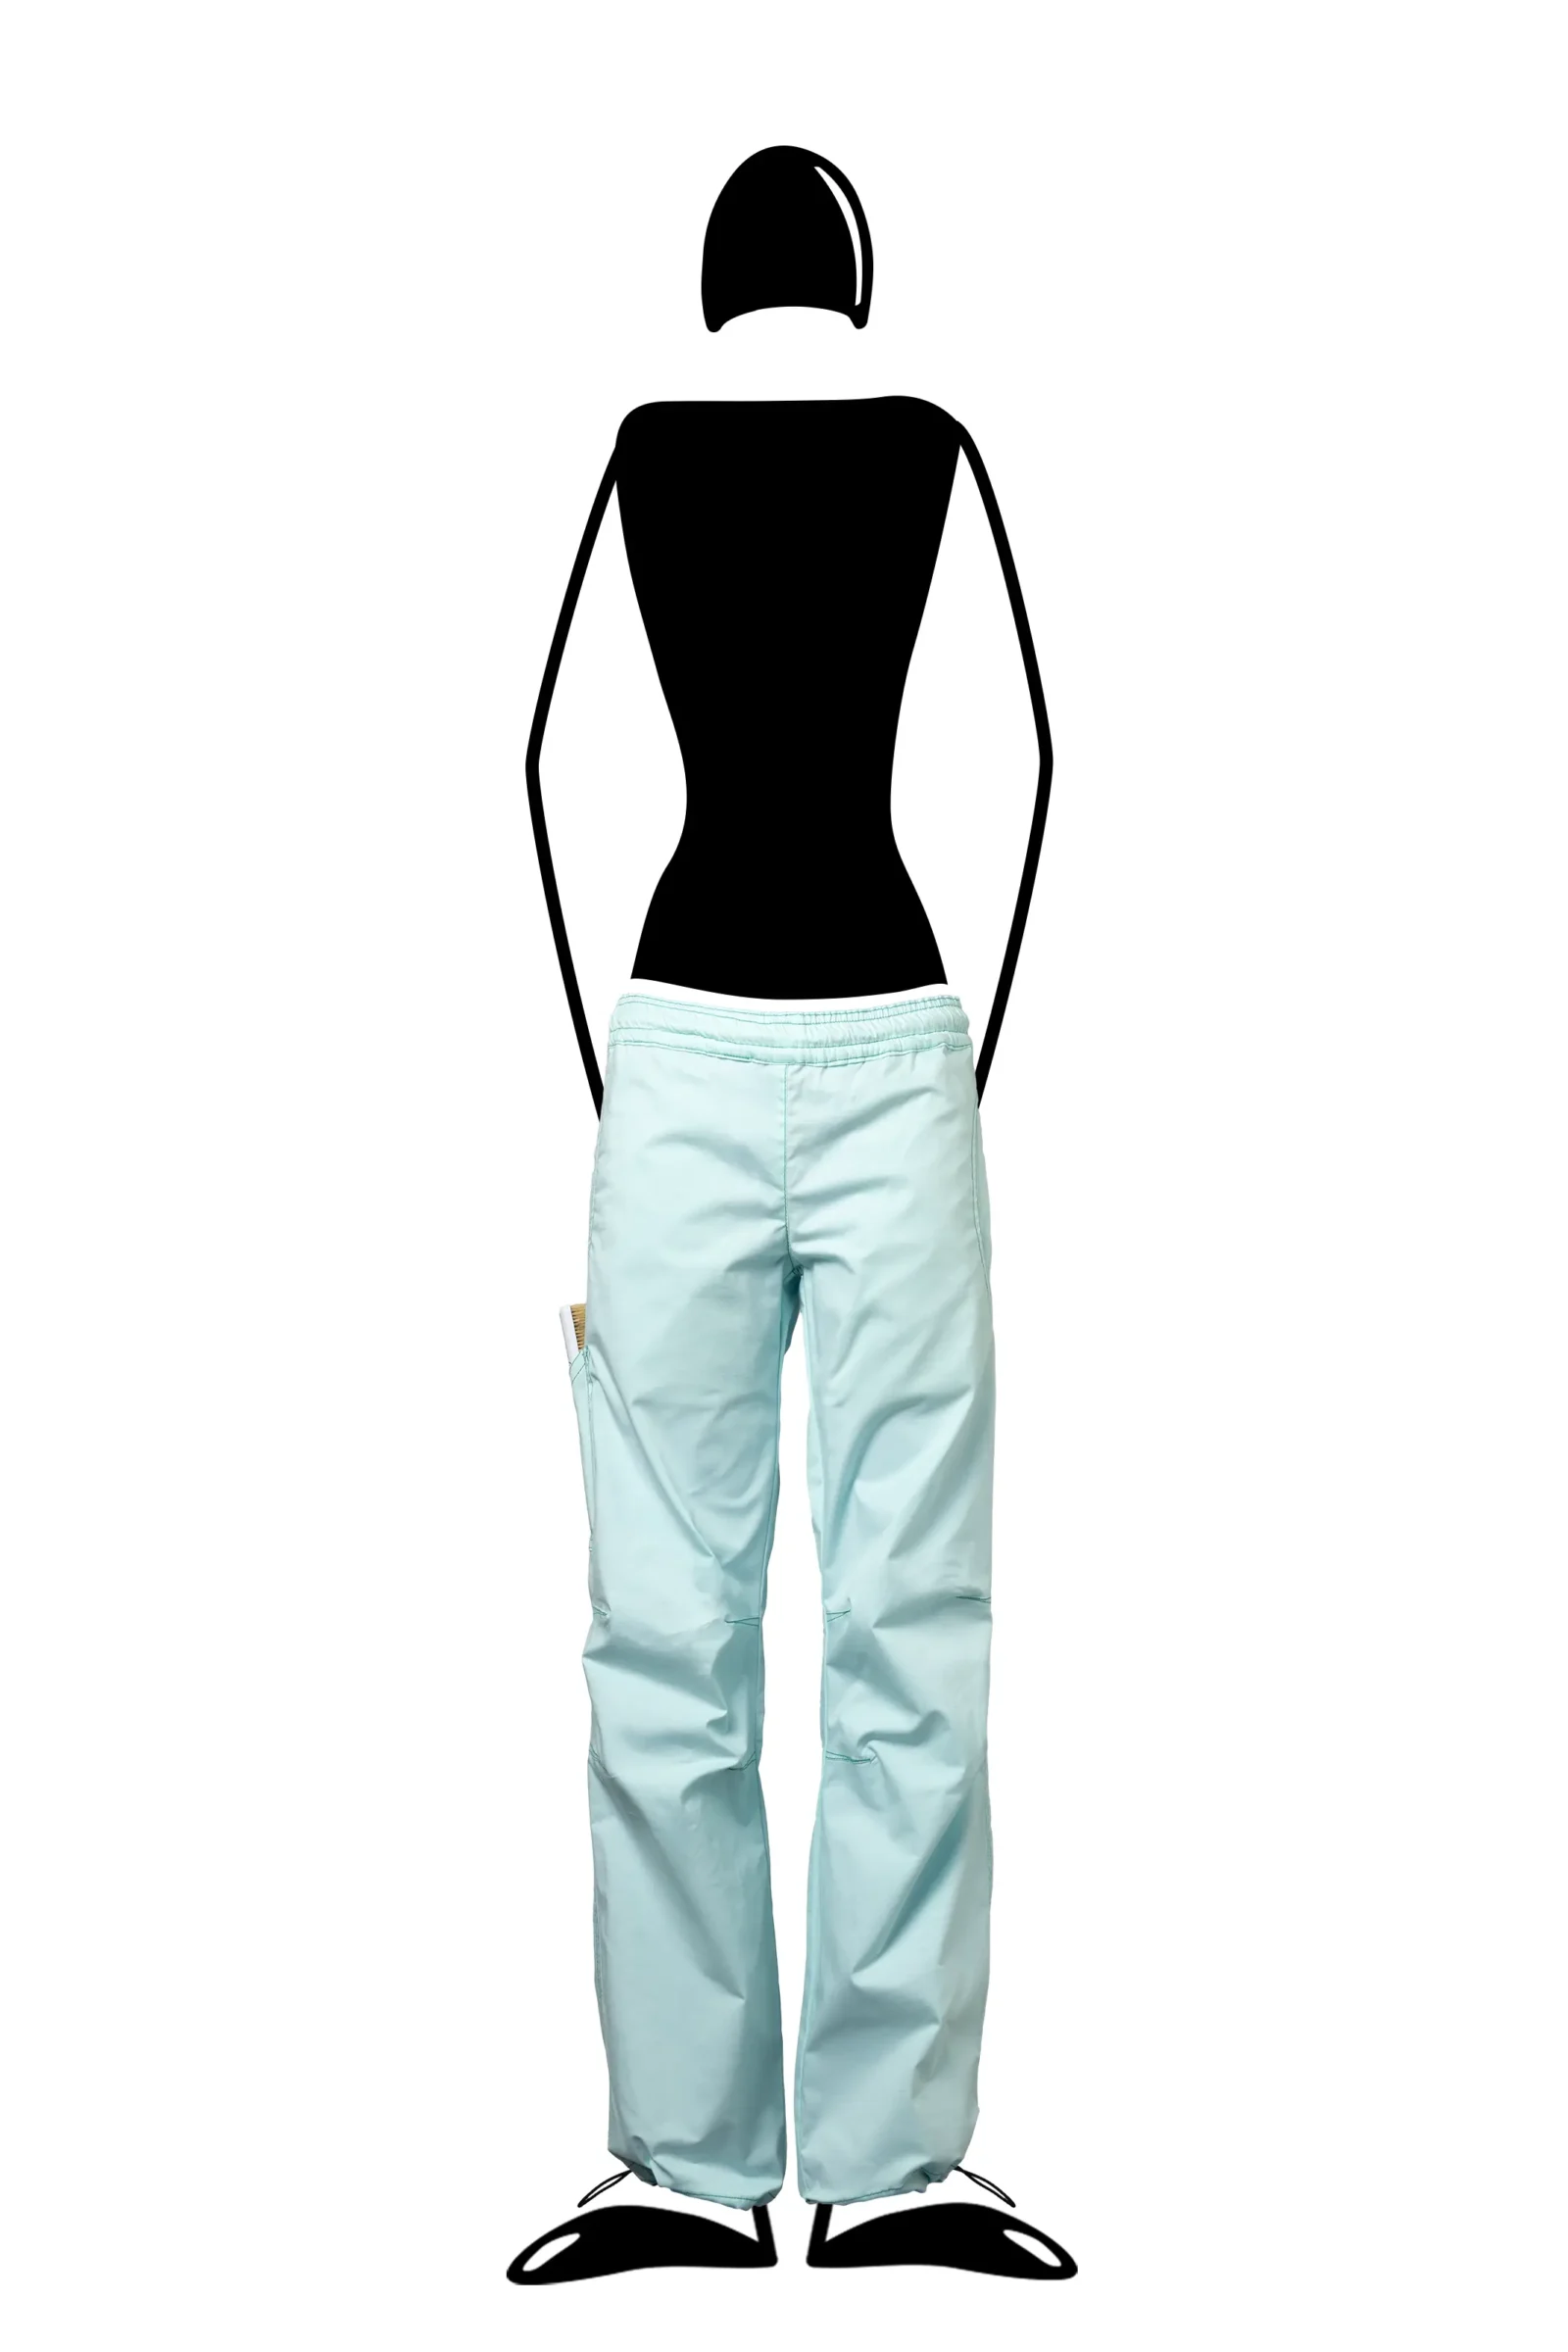 Pantalon femme - coton bleu aqua - Graphisme "Quadrifoglio" - VIOLET Monvic